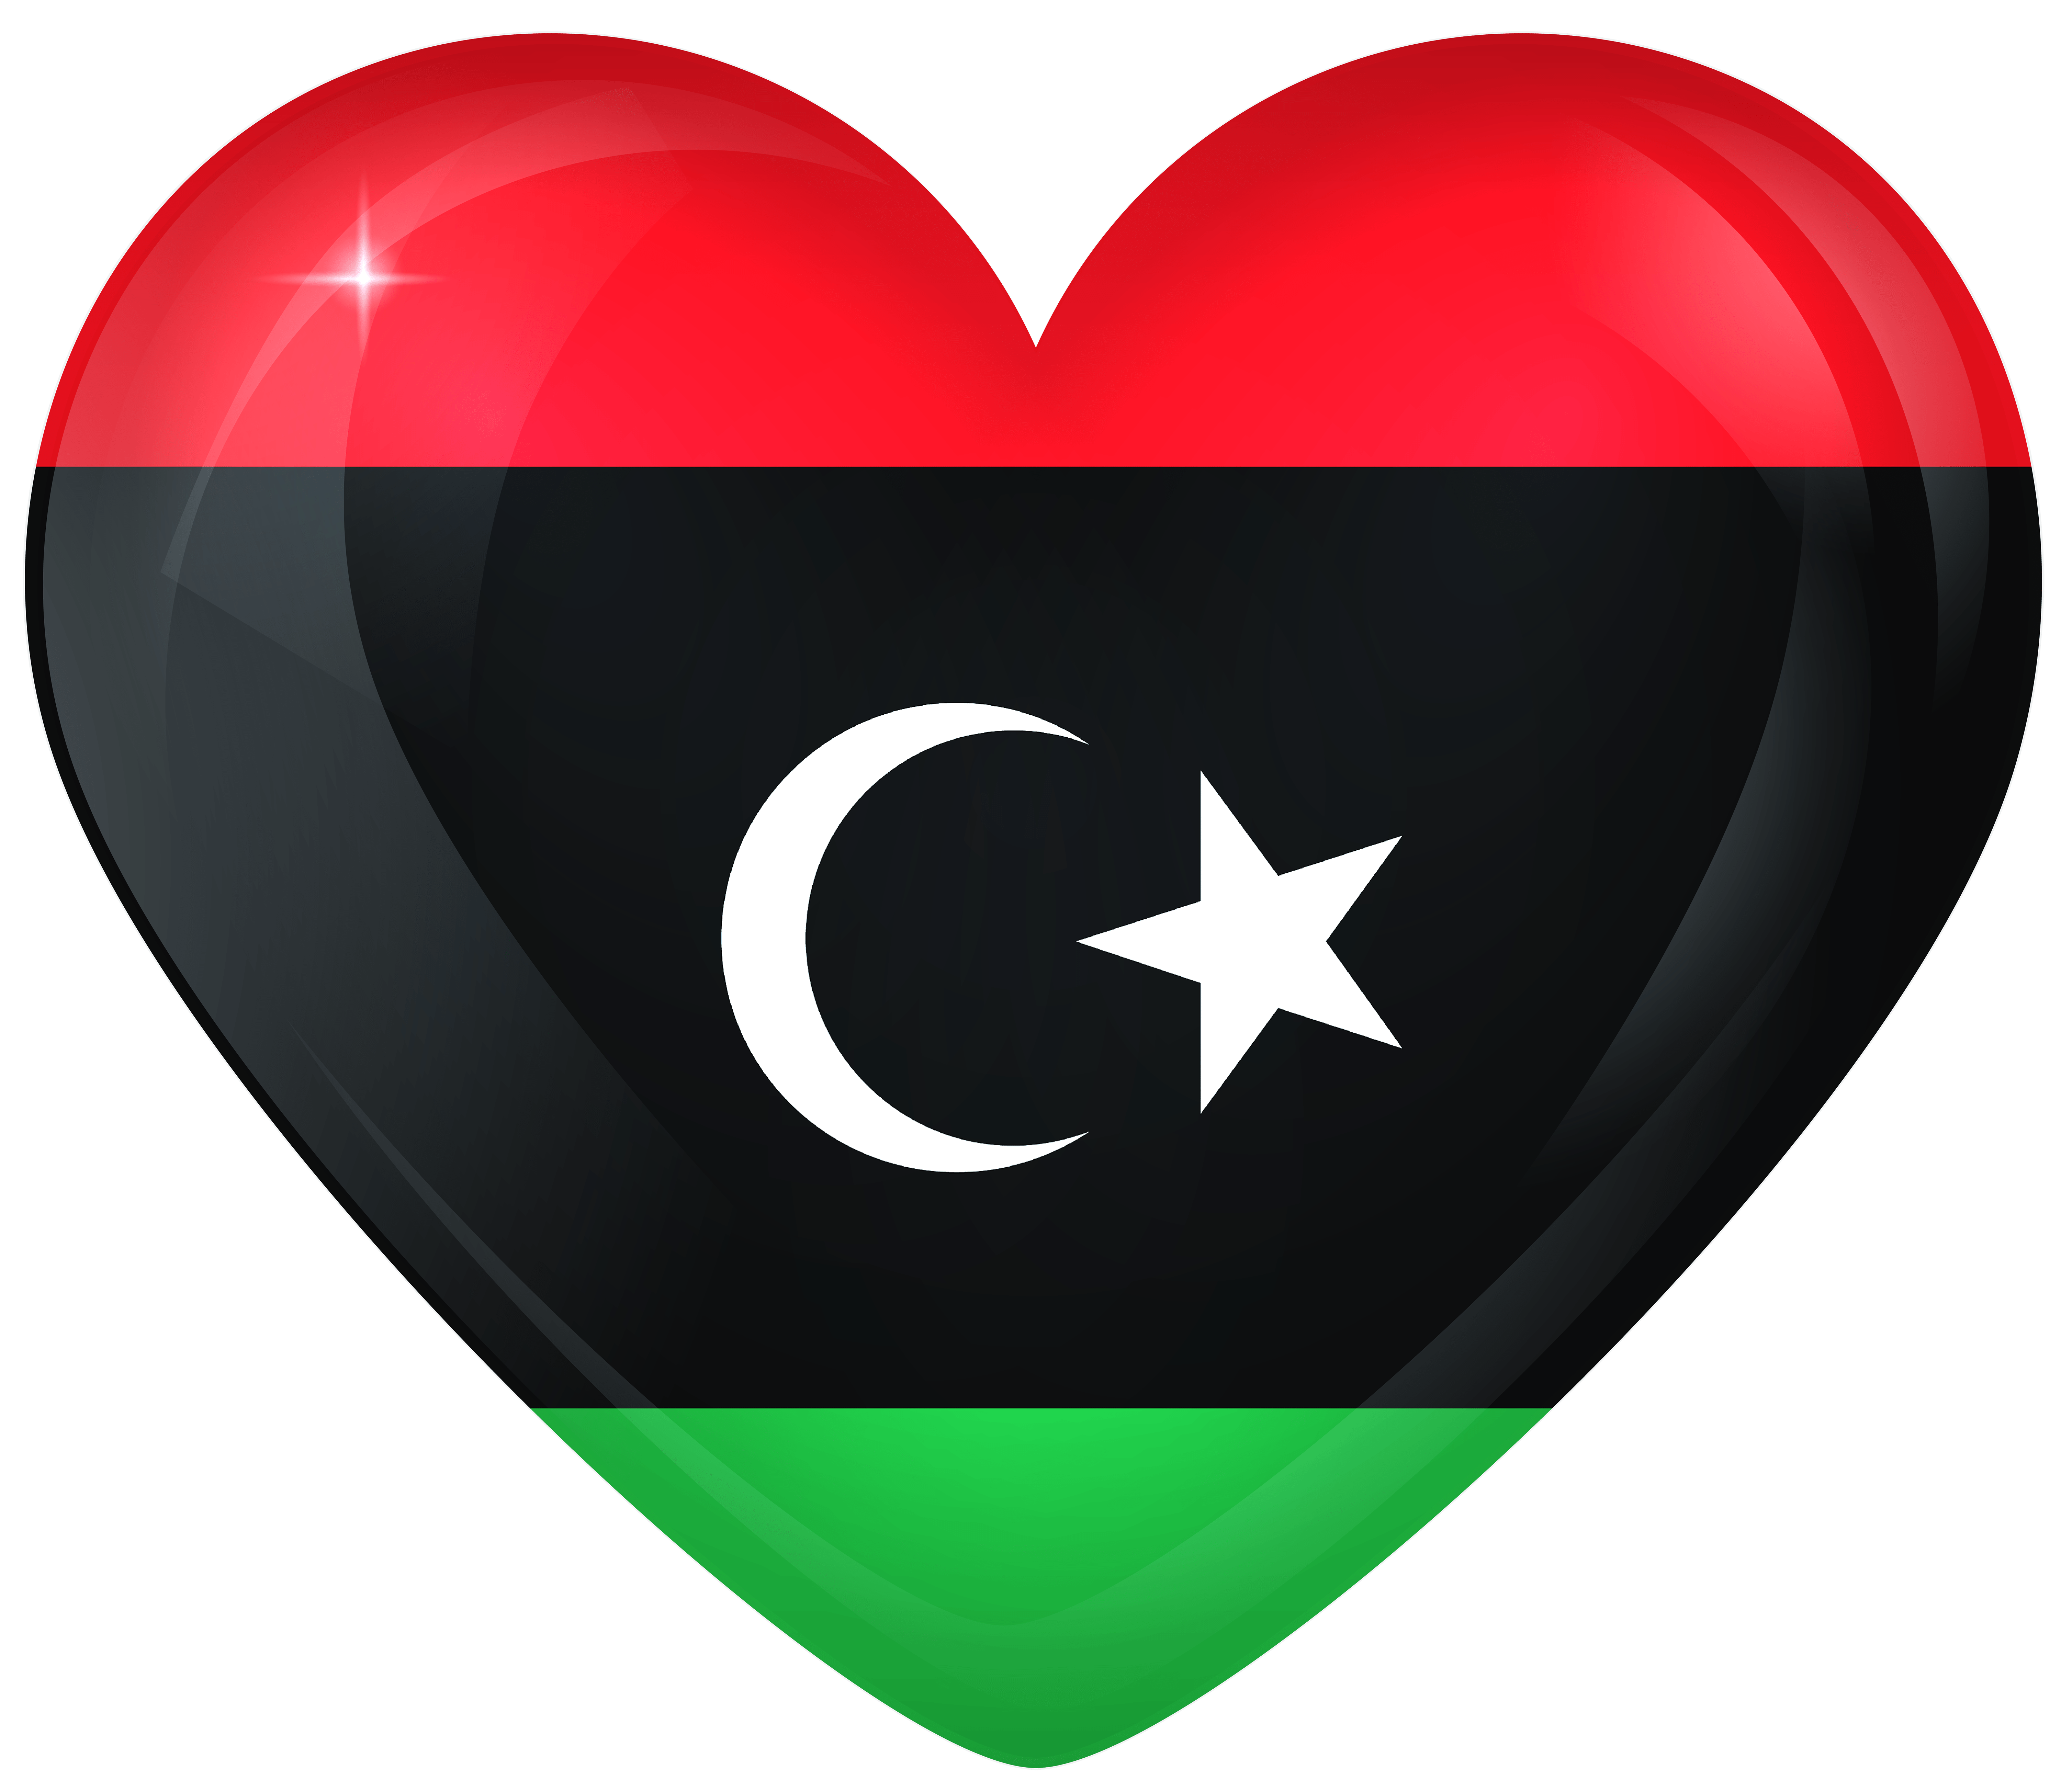 Libya Large Heart Flag Quality Image